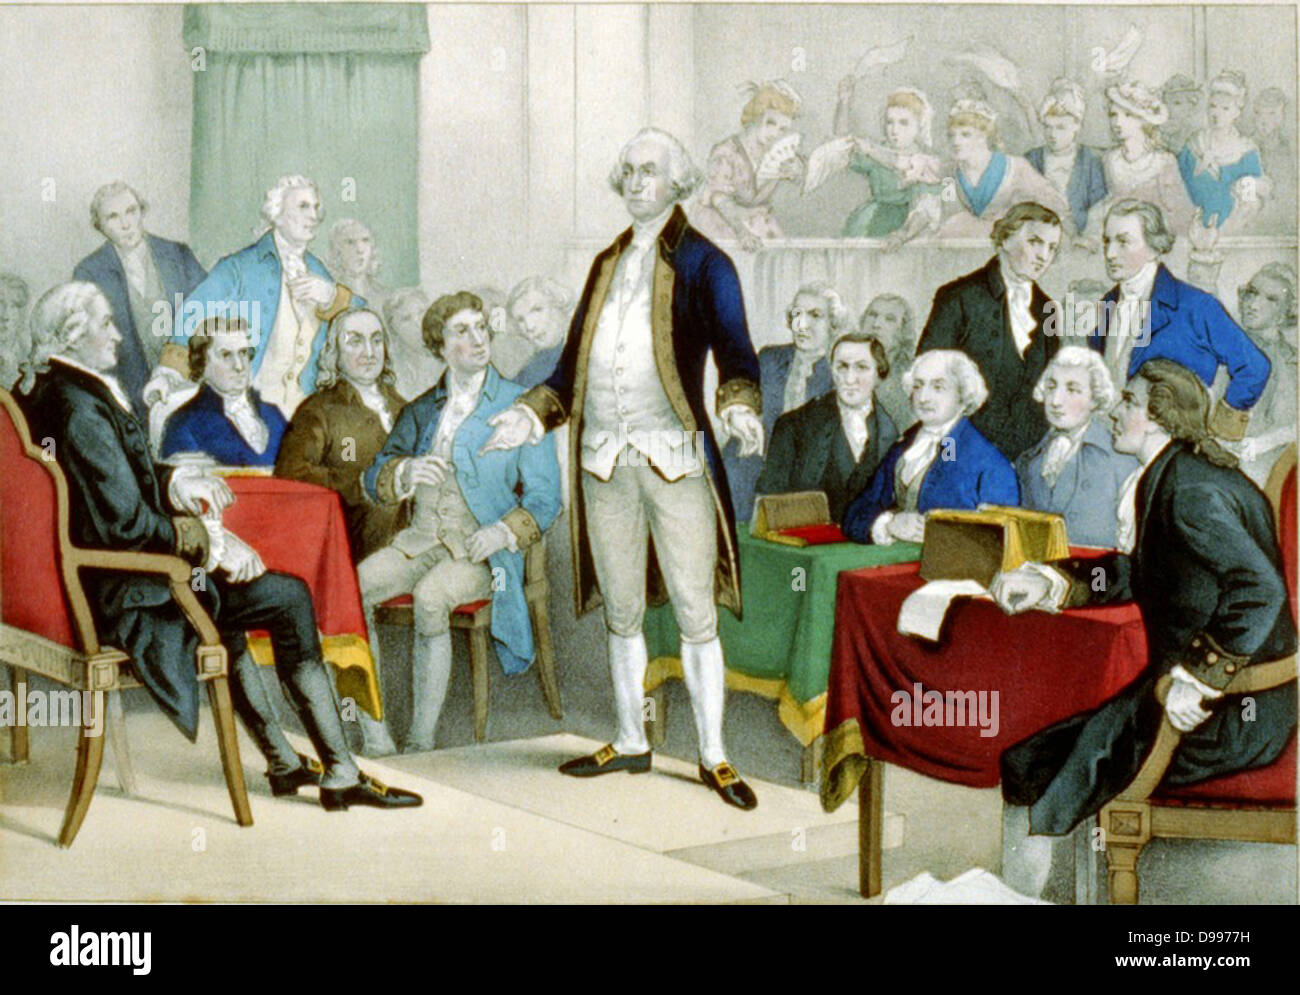 Washington, nommé commandant en chef. Currier & Ives imprimer 1876. Imprimer montre George Washington debout sur une plate-forme entourée par les membres du Congrès Continental. Dans l'arrière-plan, les femmes agitent leurs mouchoirs. lithographie, munis de la main. Banque D'Images